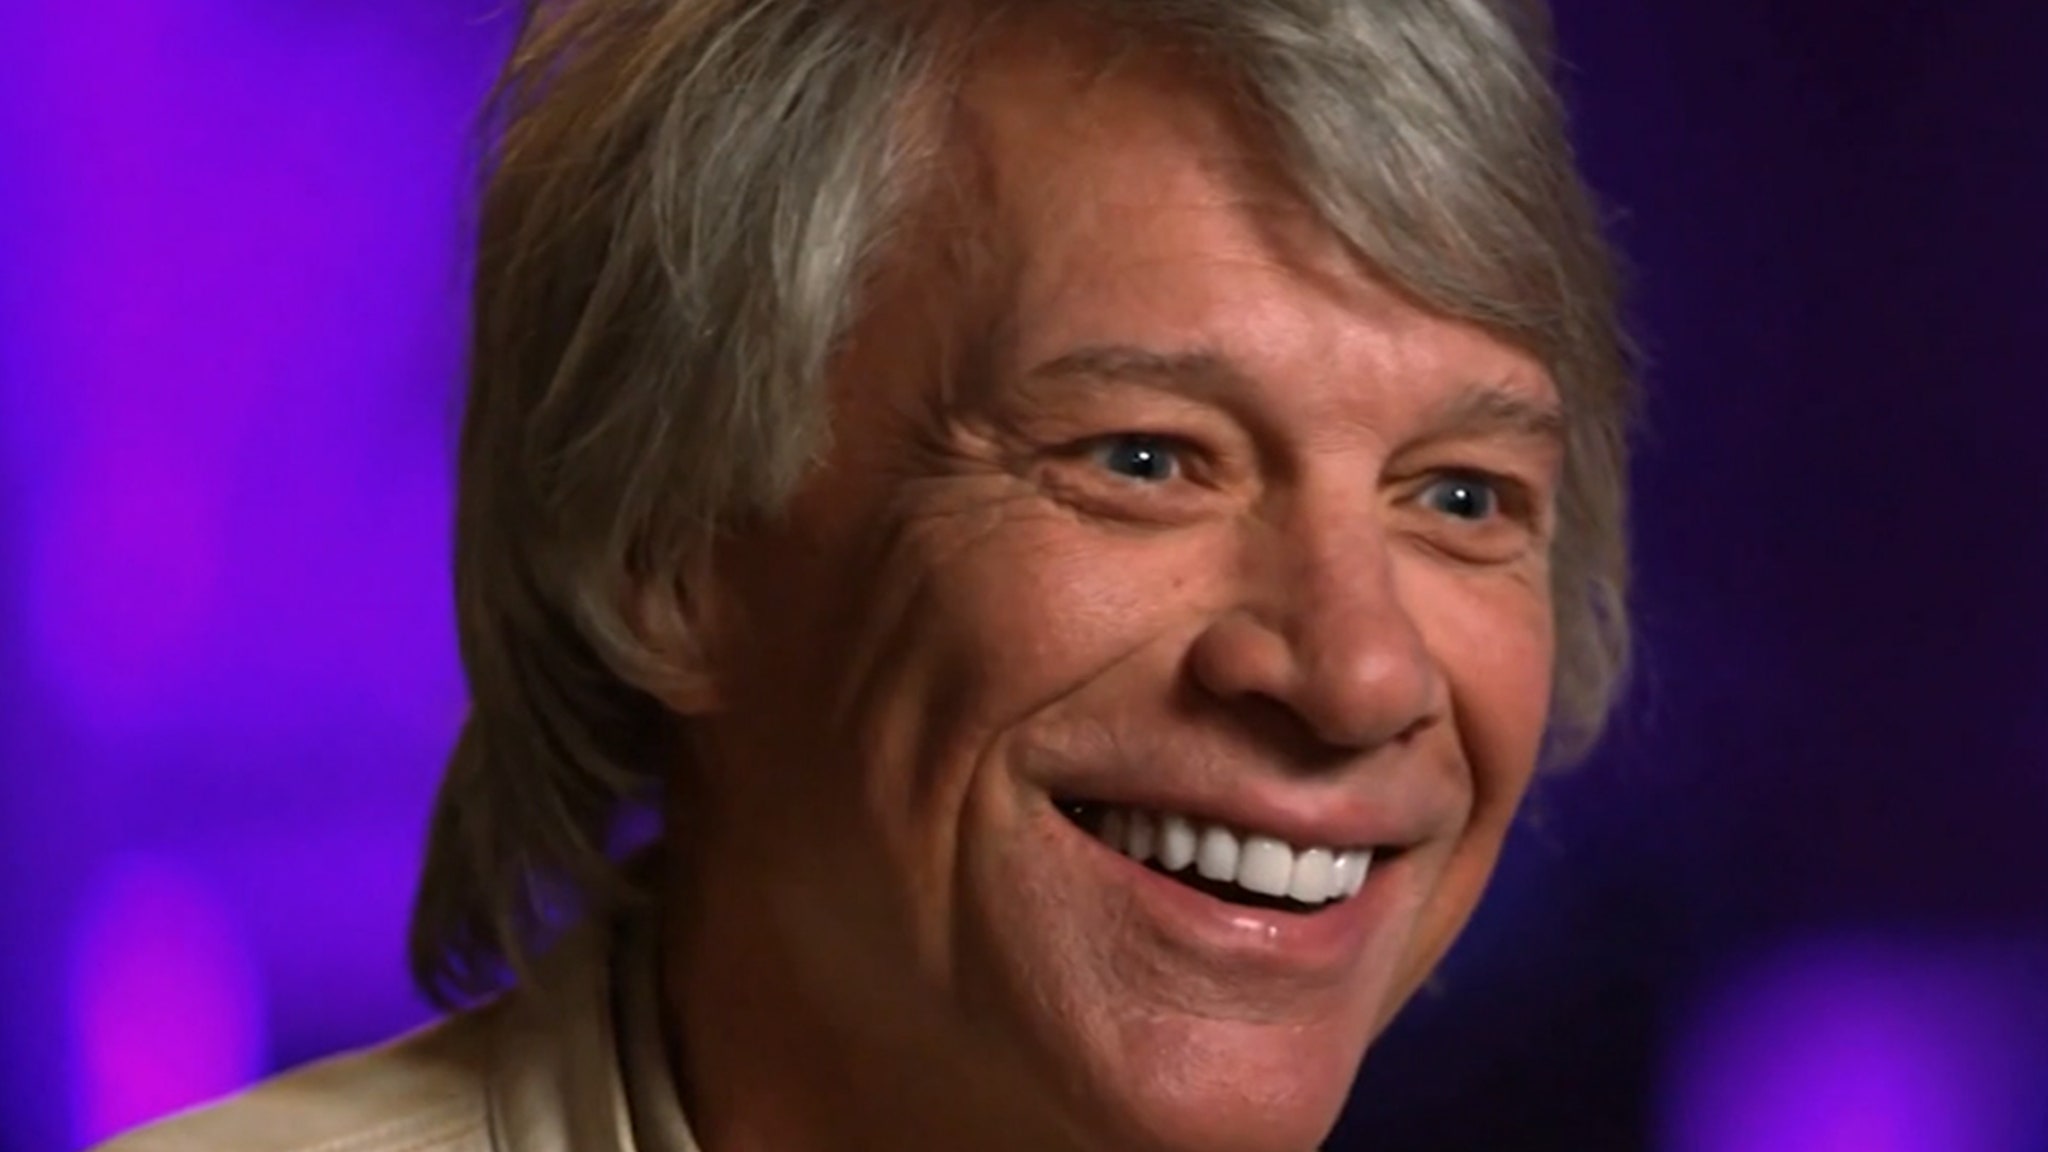 Jon Bon Jovi diz que “escapou impune de um assassinato” durante os primeiros dias da Rockstar